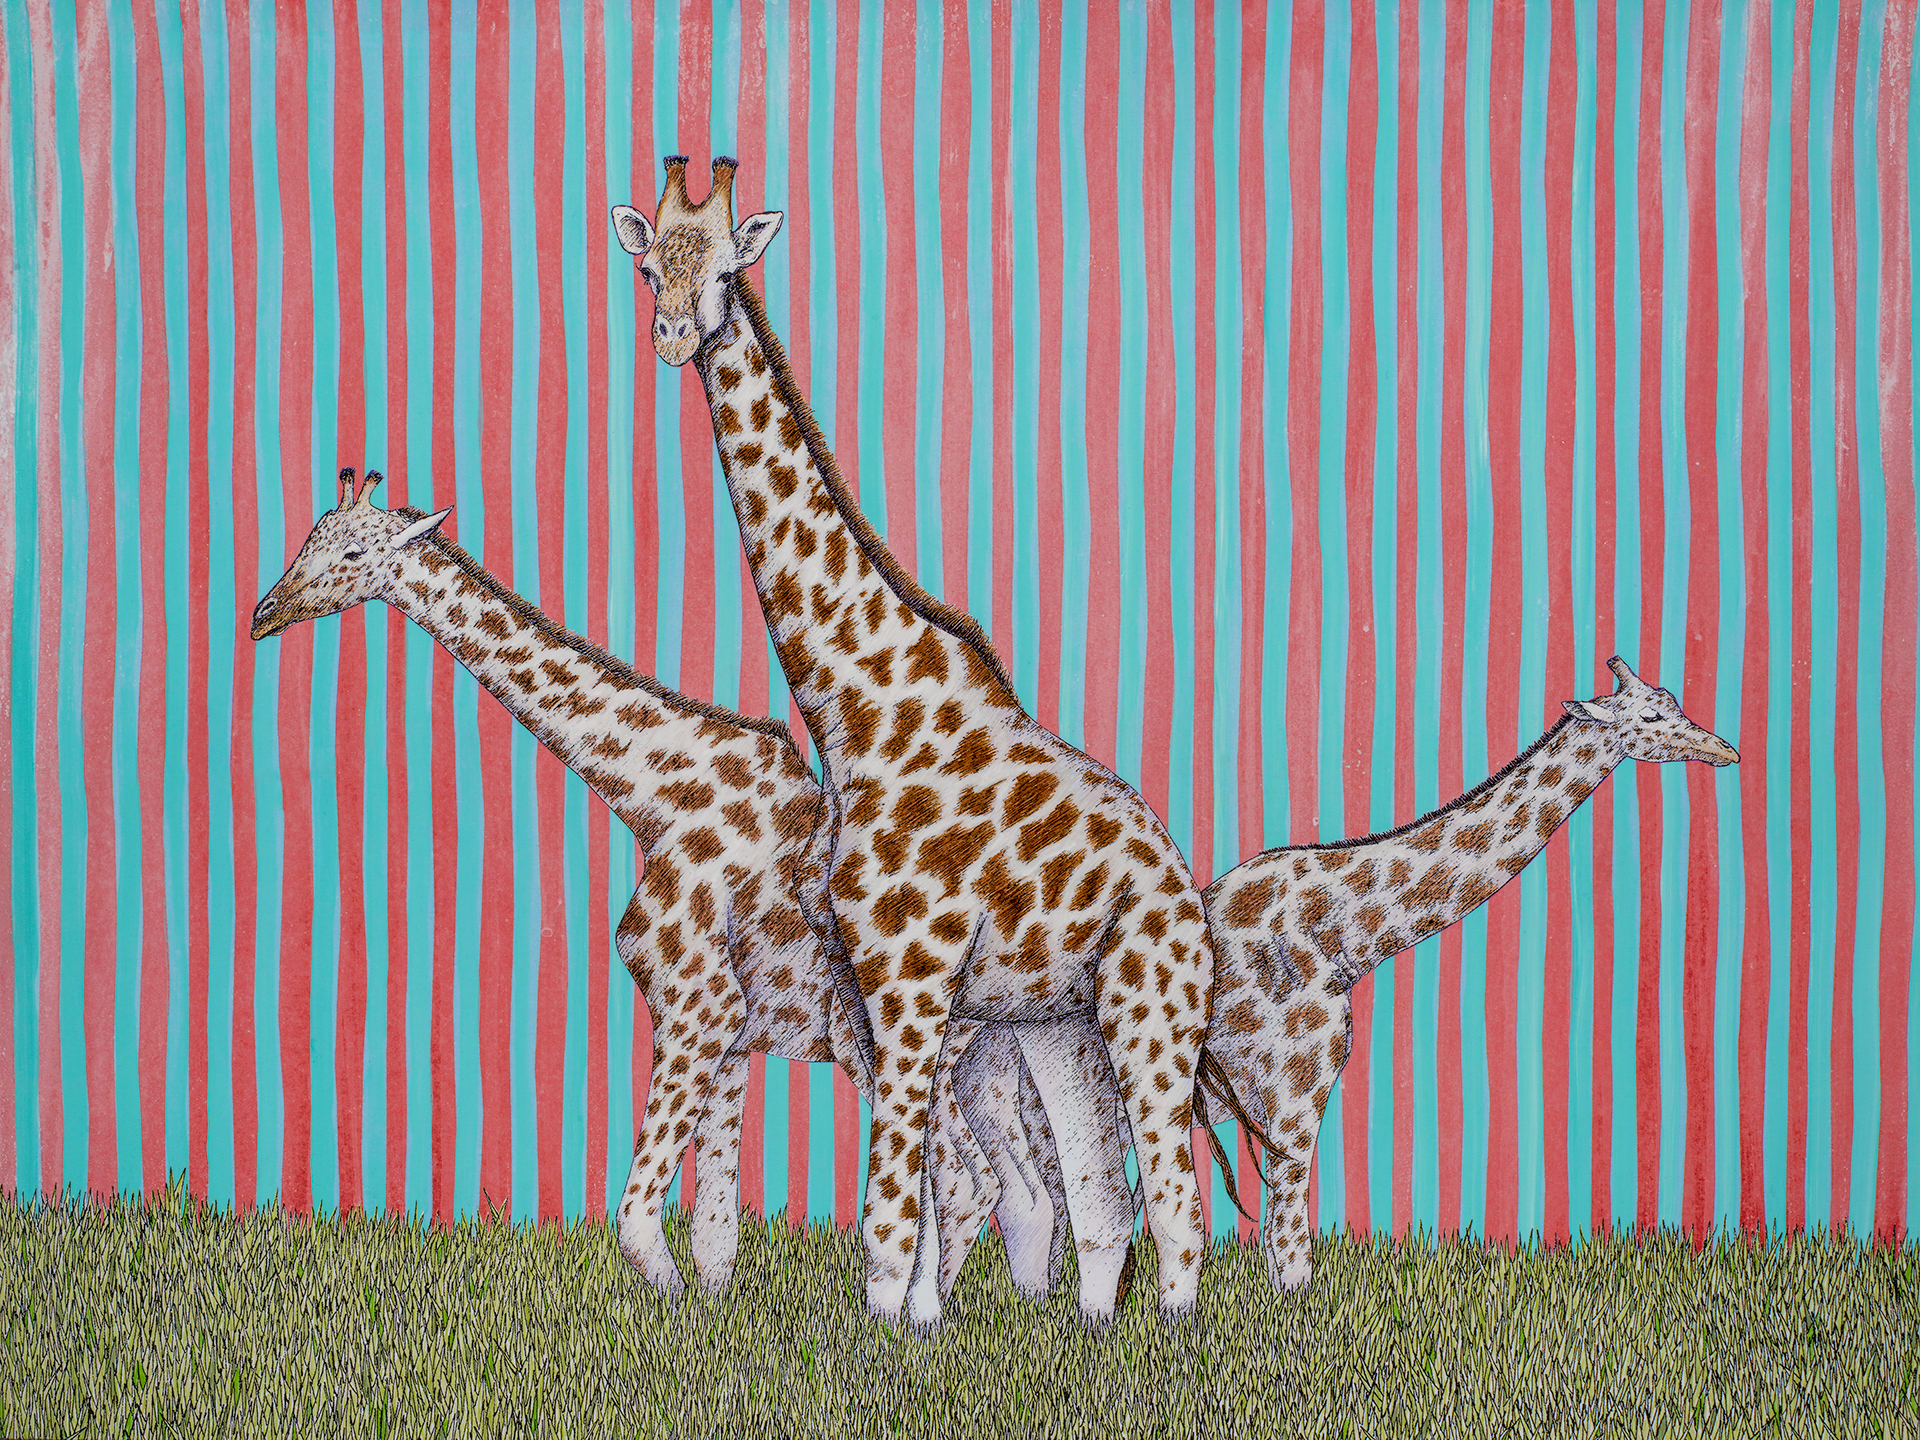 ‘Giraffes (3 of a Kind)’, 40” x 30”, $800